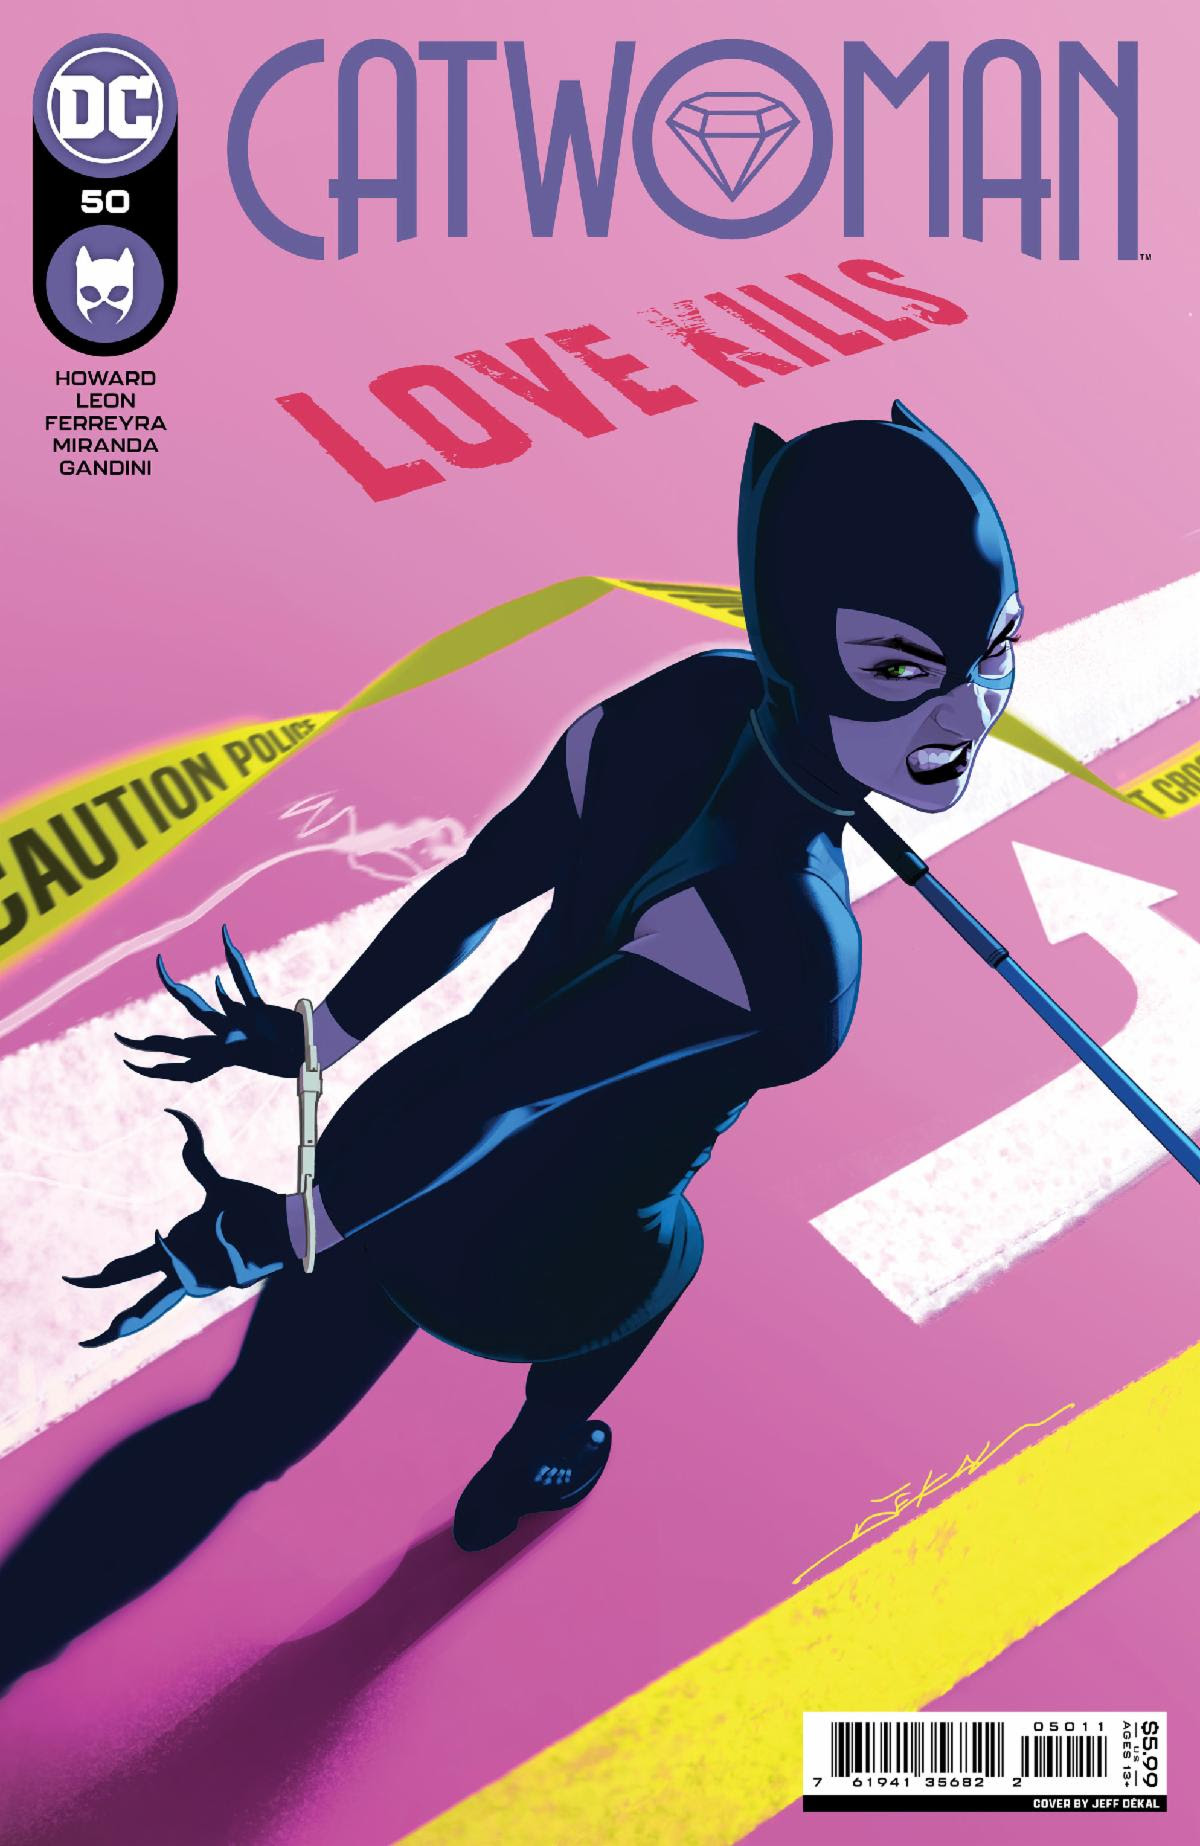 Catwoman #50 Cover A Jeff Dekal (2018)